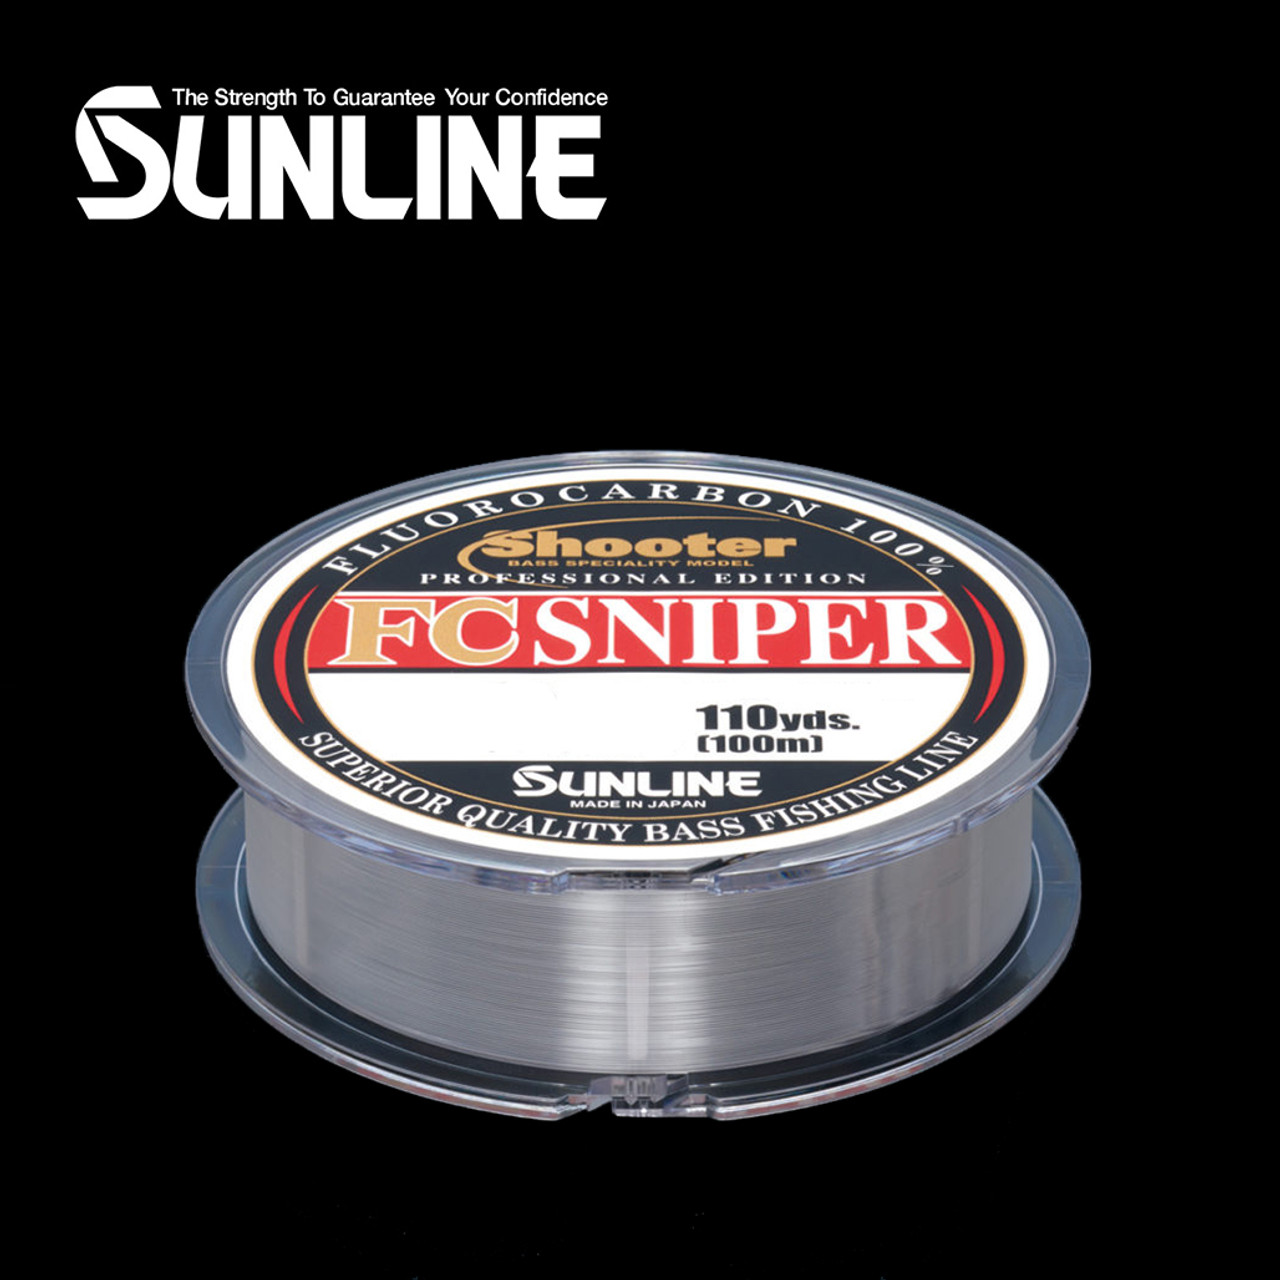 Sunline 63038900 Super FC Sniper 2 Lb. Super FC Sniper, Natural